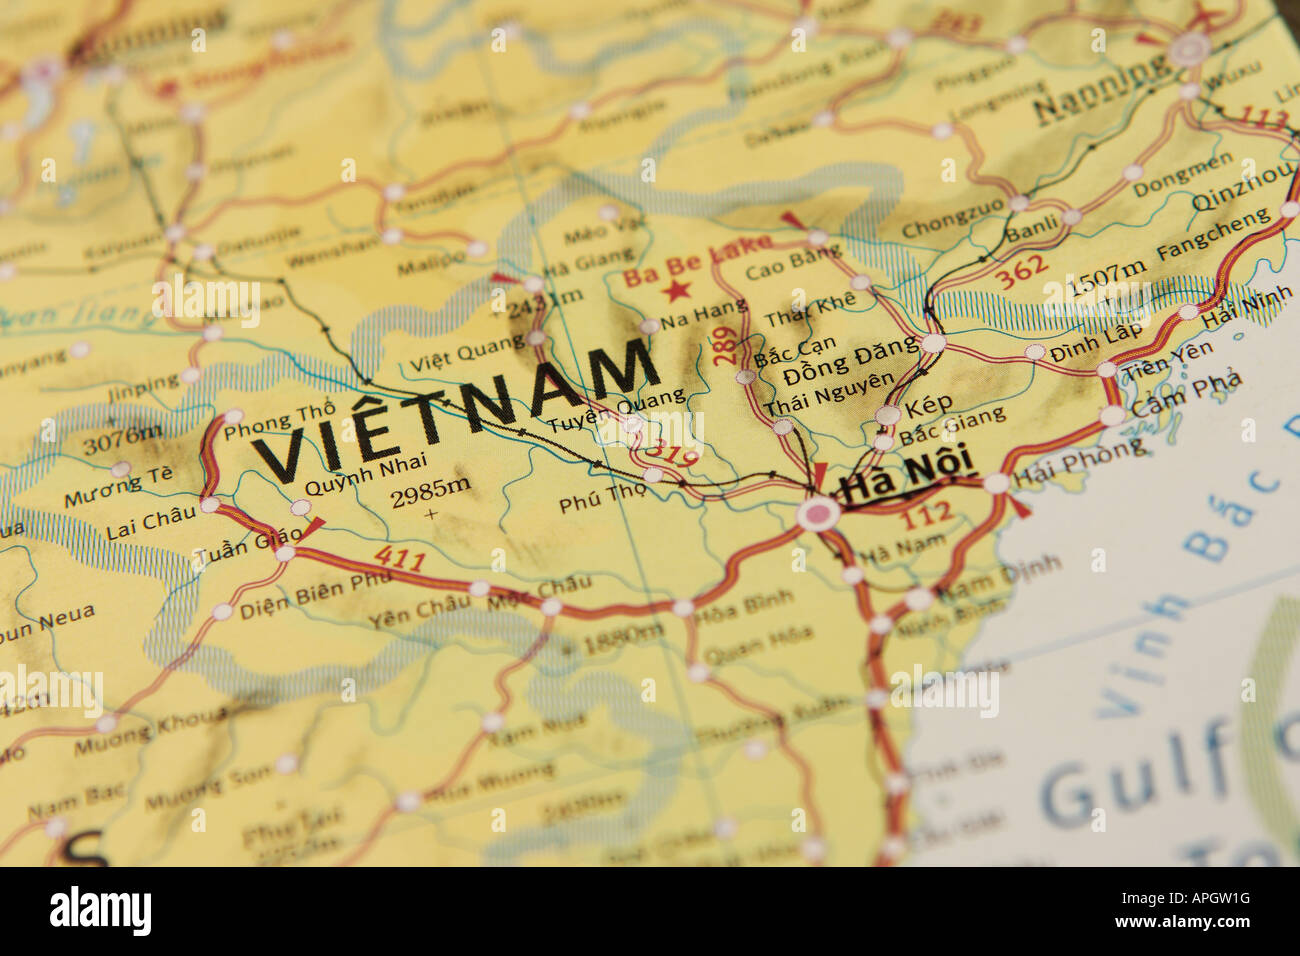 La carte du Vietnam - Indochine Banque D'Images